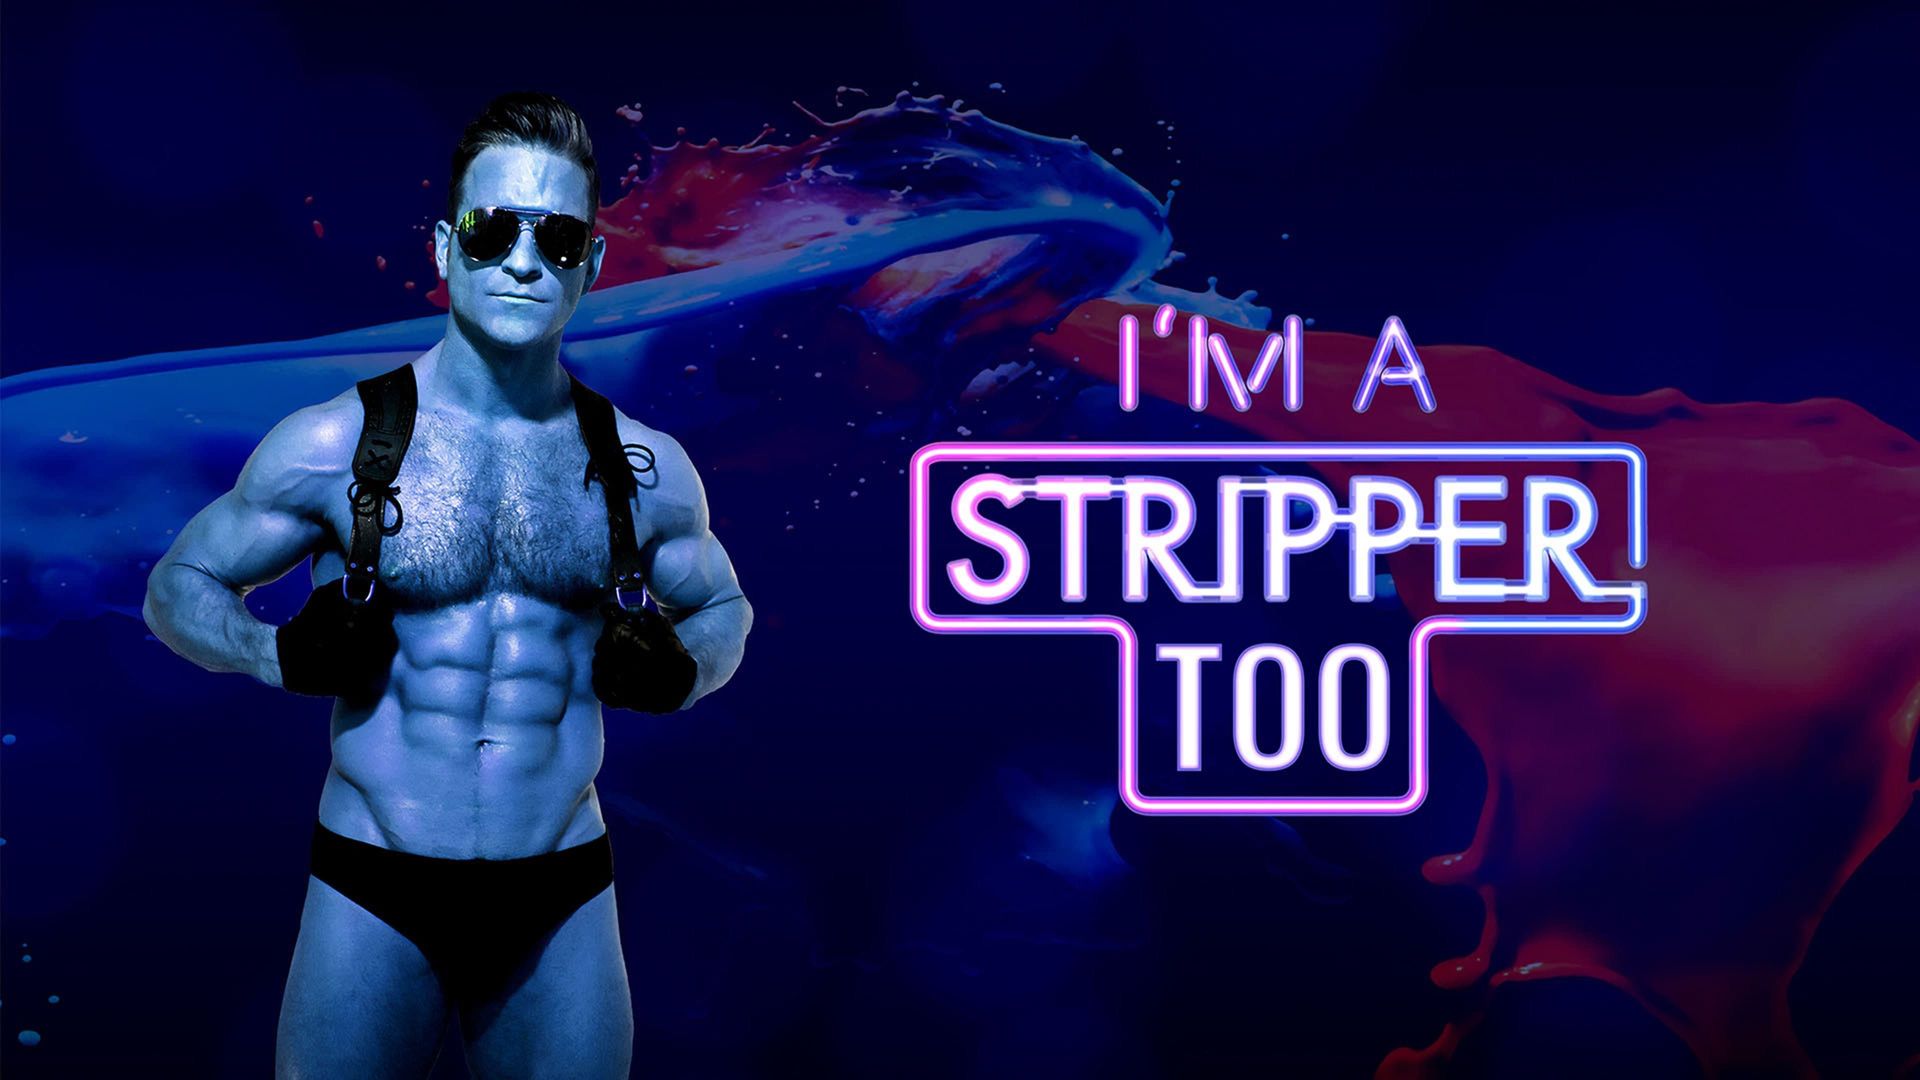 I'm a Stripper background